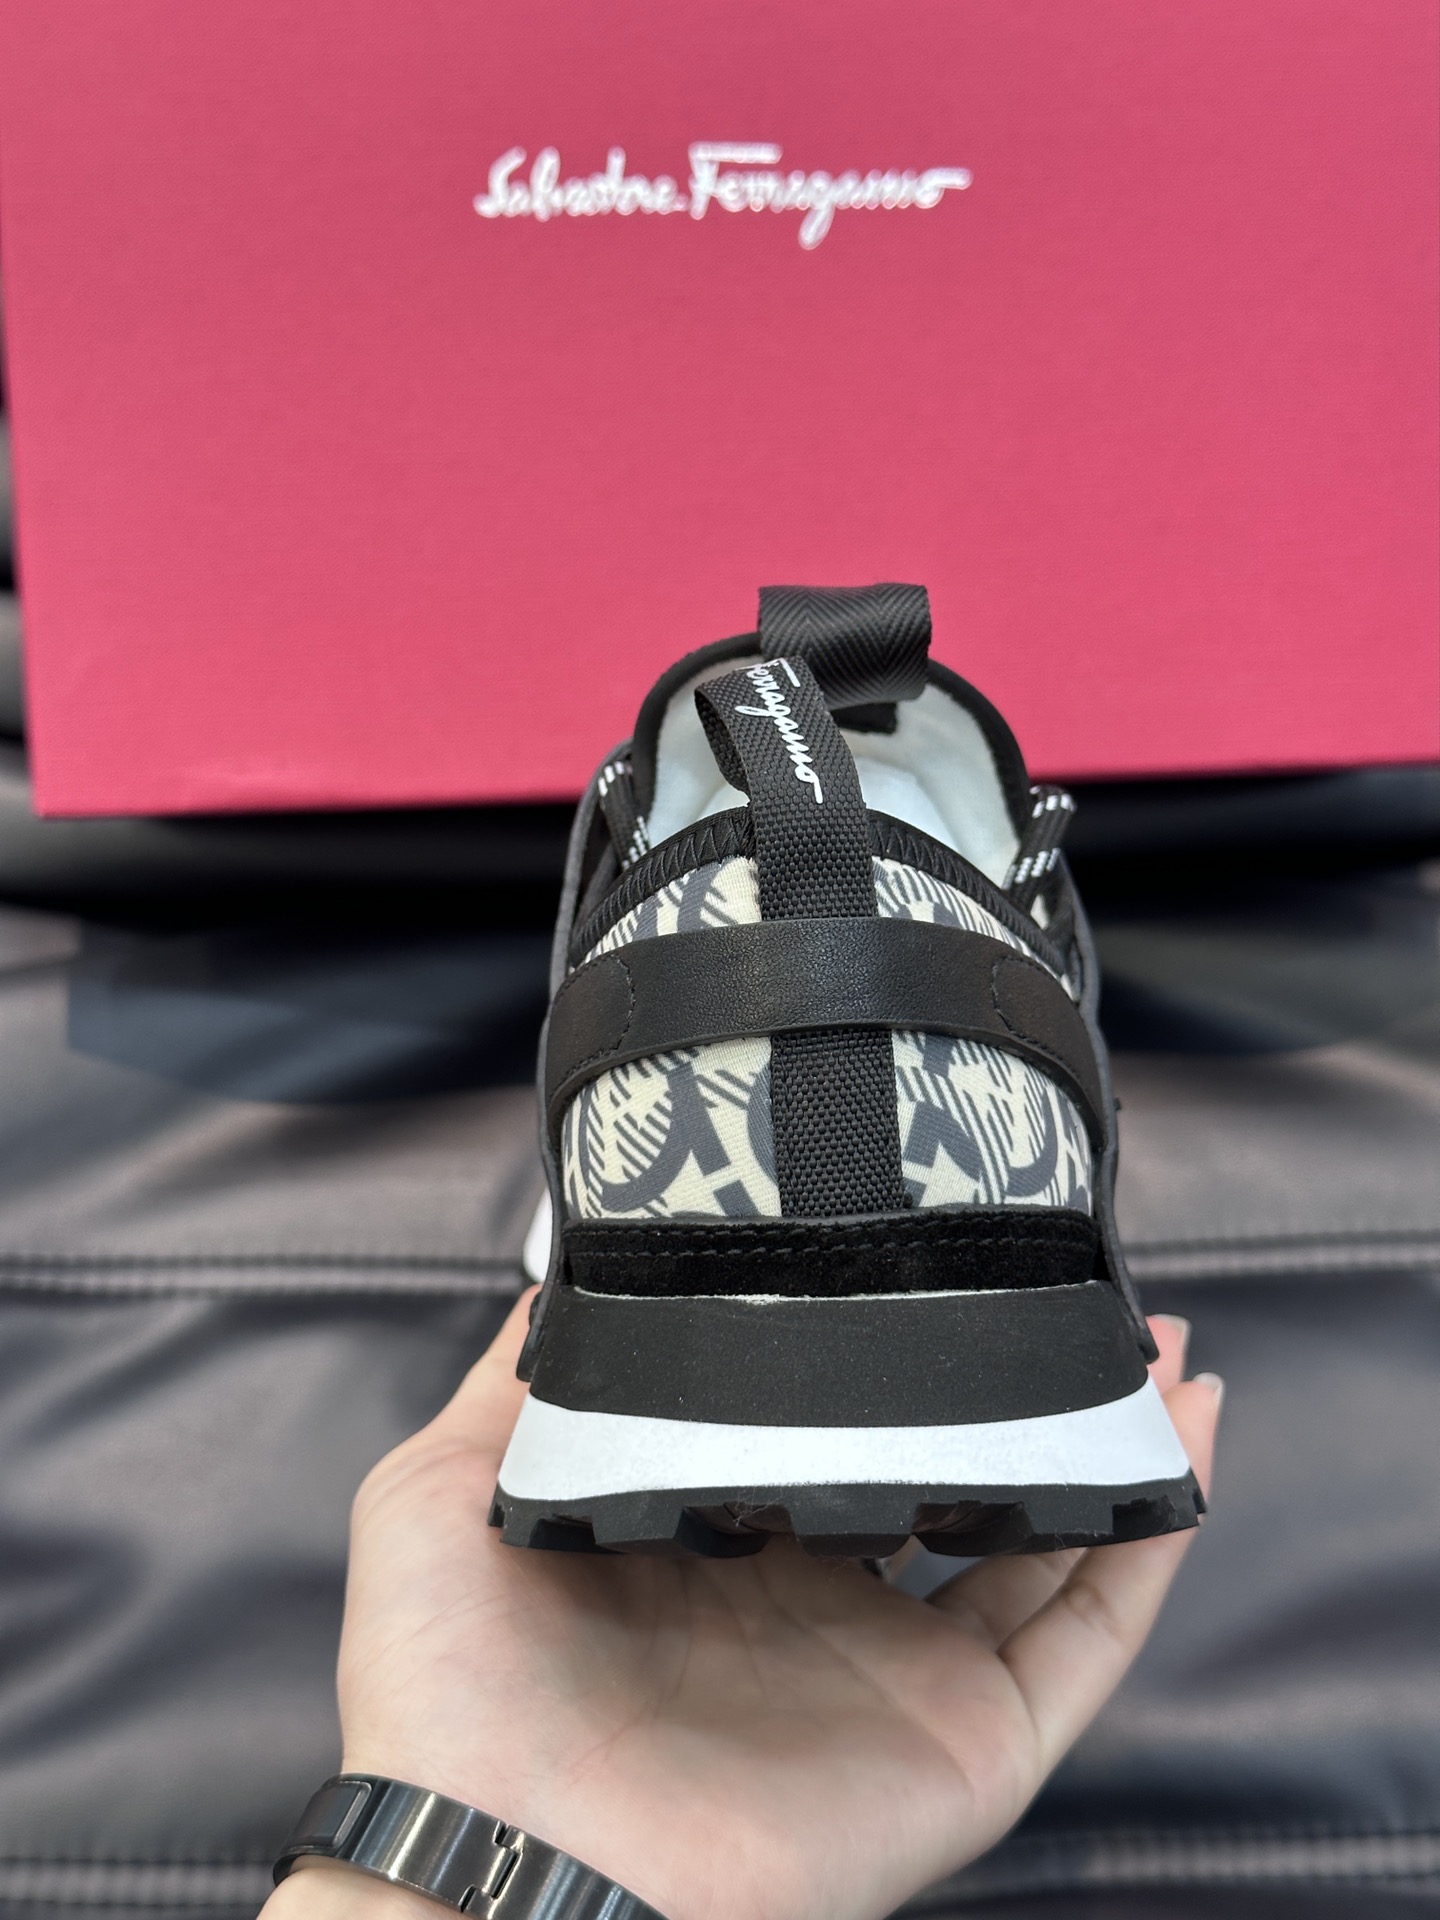 Ferragam*经典男士休闲运动鞋设有醒目的logo细节橡胶TPU鞋底面整体点缀注塑品牌徽标兼备创新功